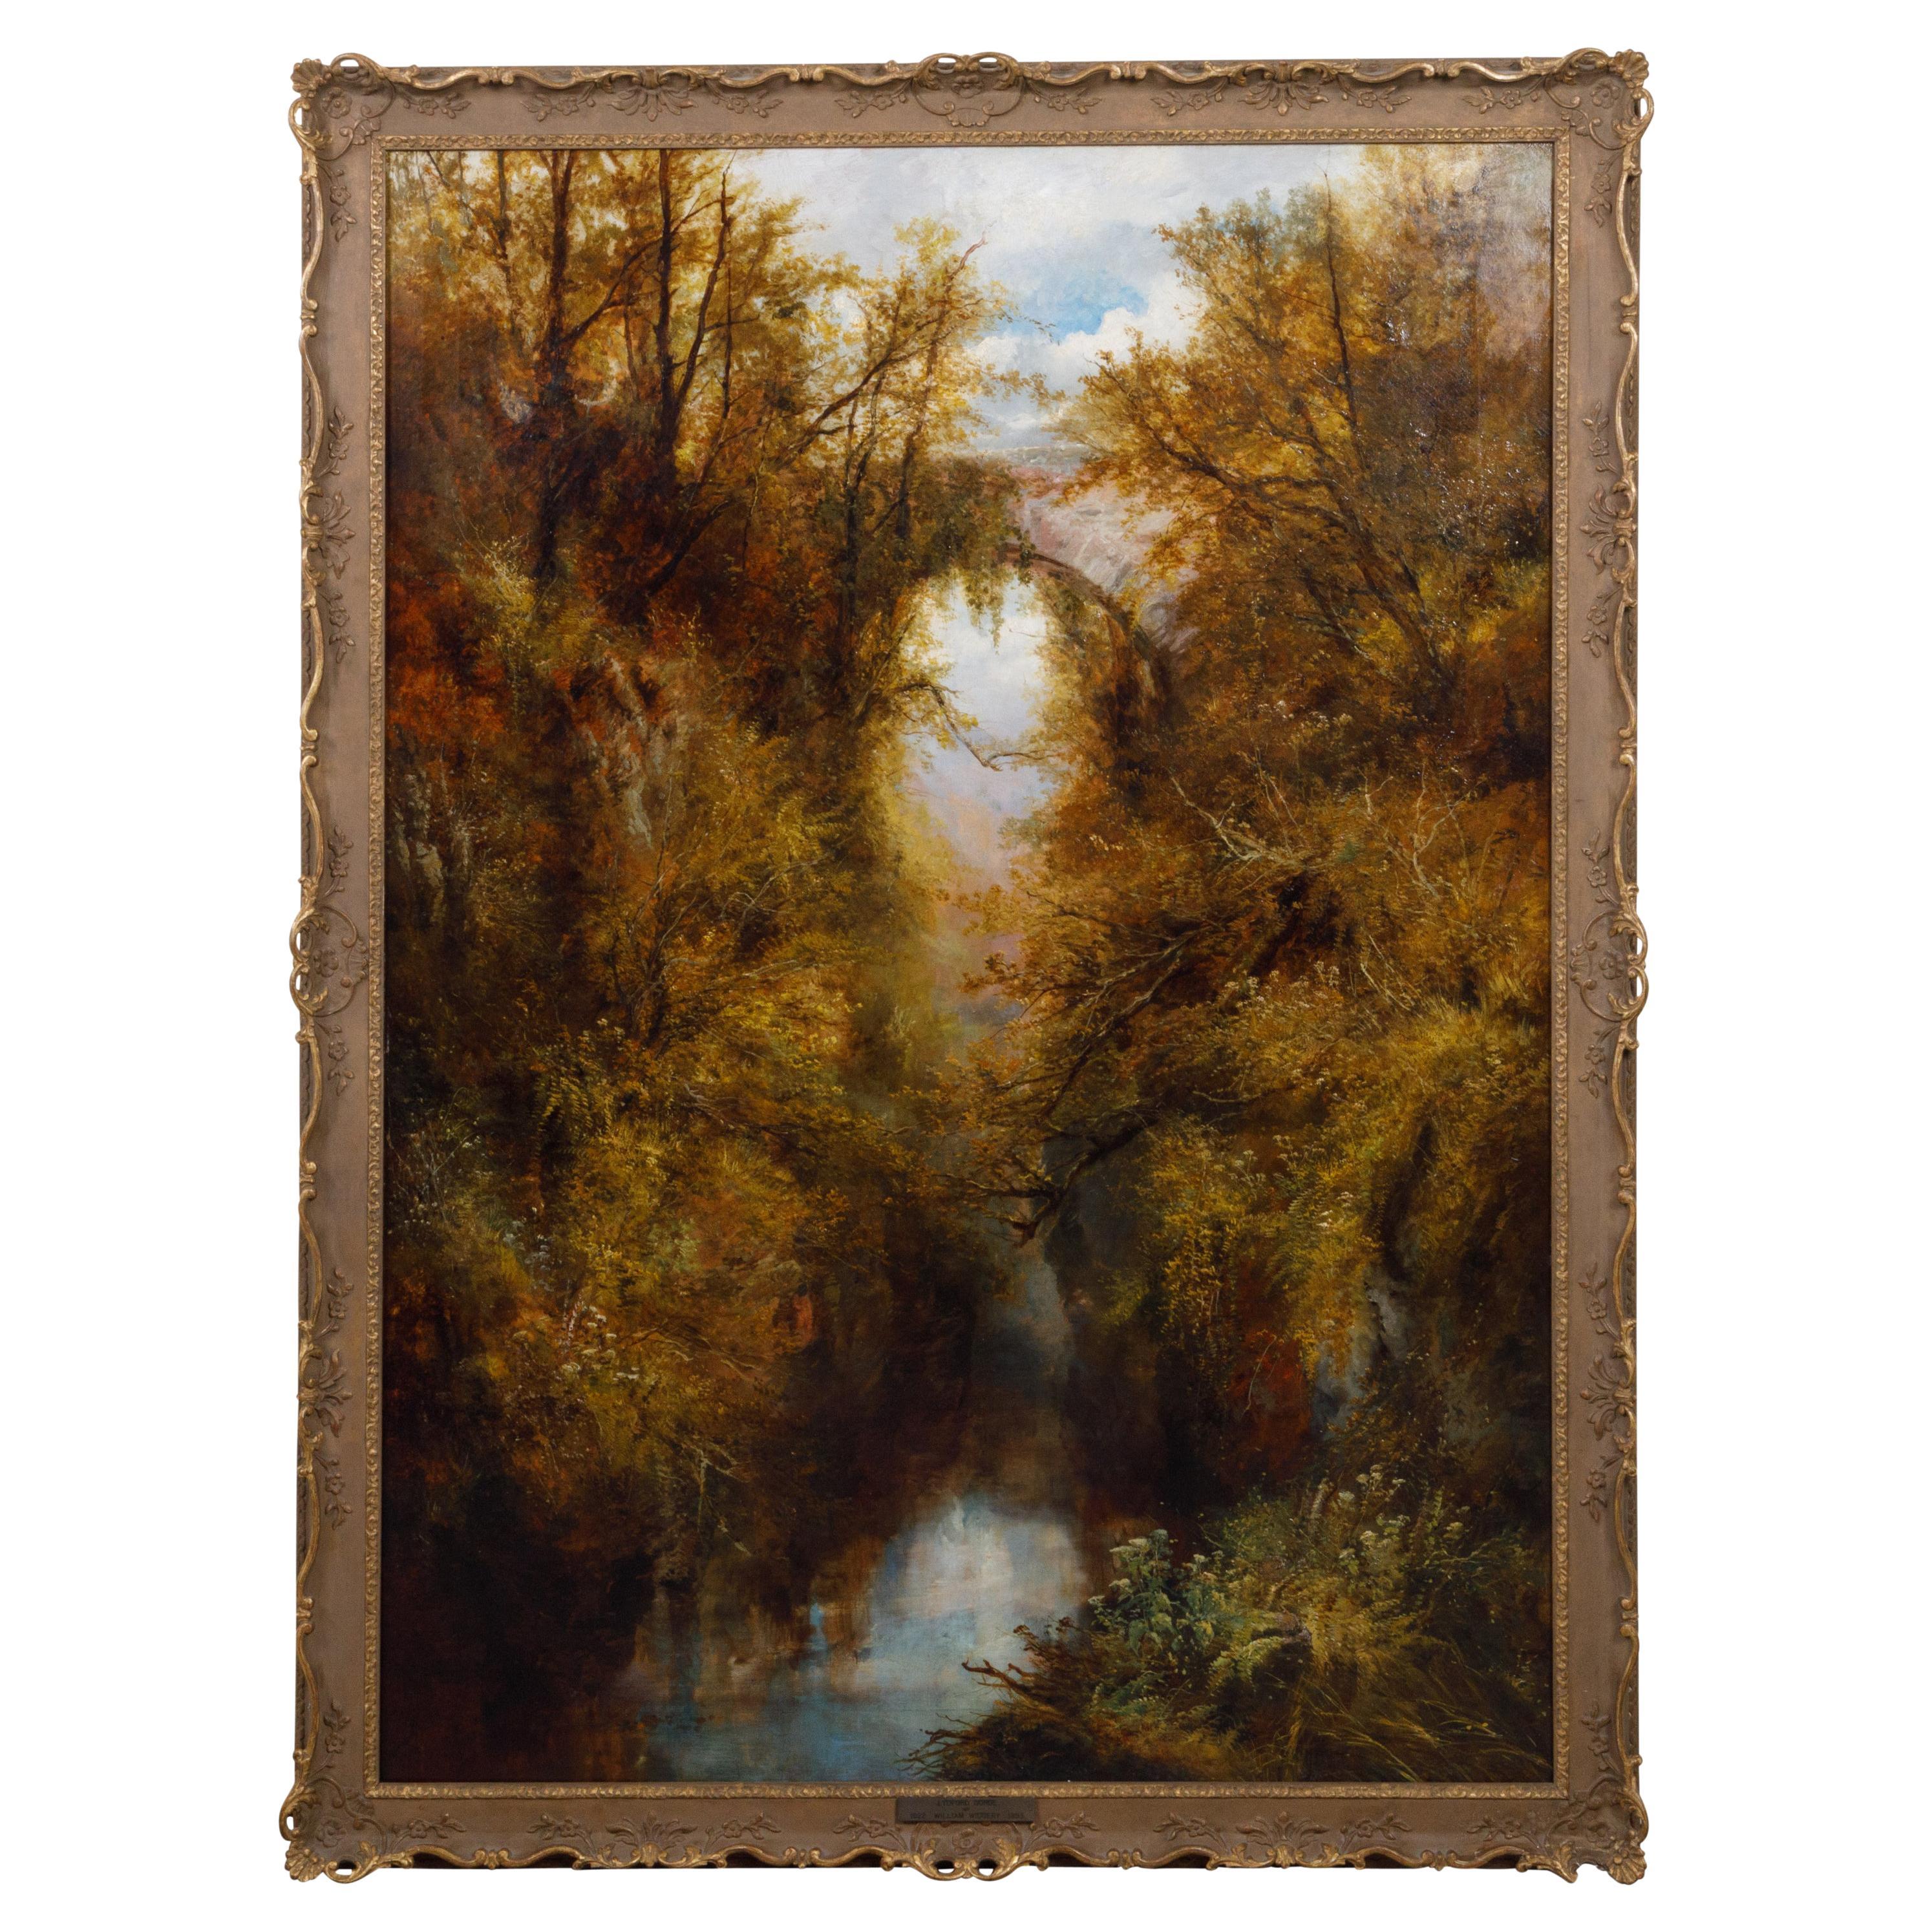 Englisches Landschaftsgemälde des 19. Jahrhunderts von William Widgery von Lydford Gorge